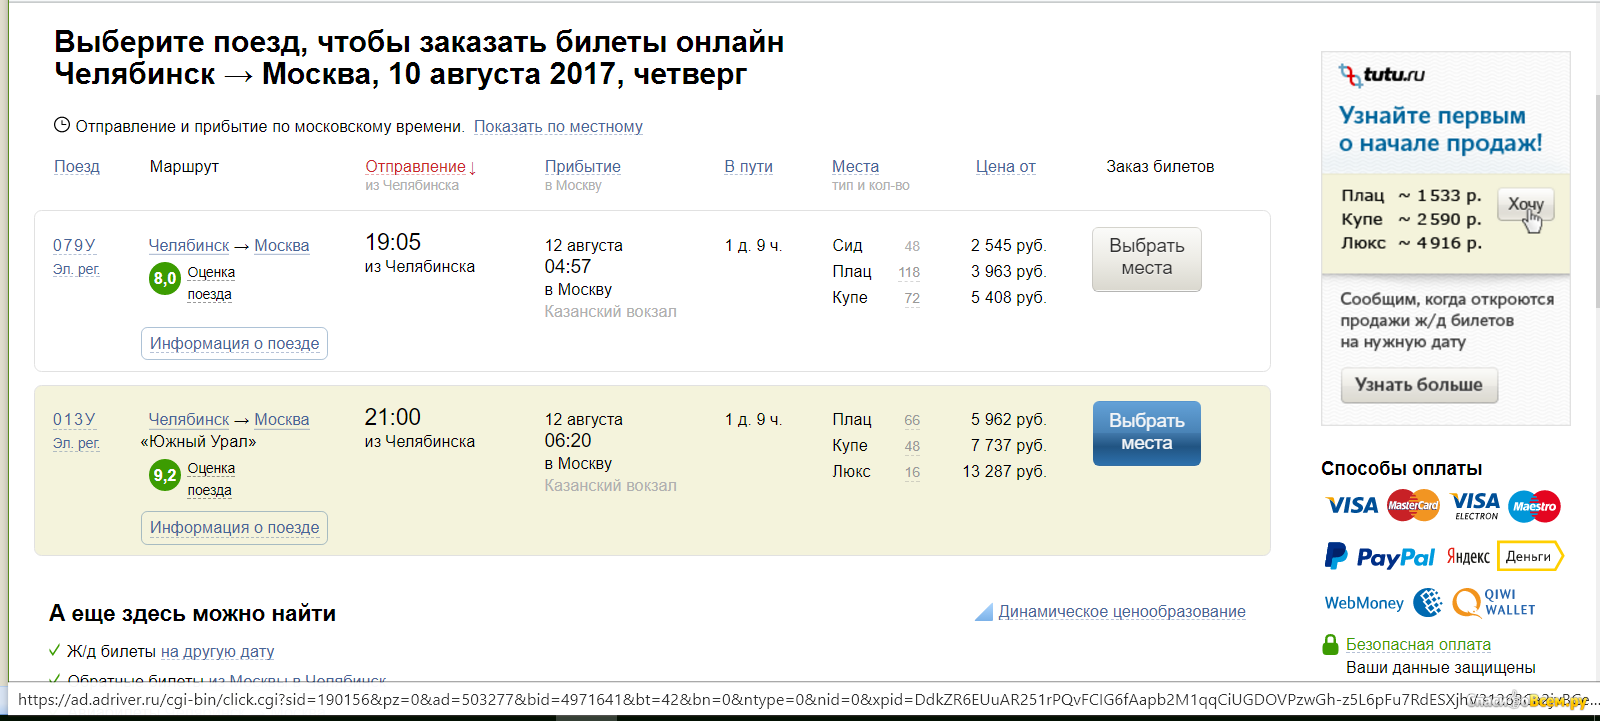 Стоимость проезда в электричке составляет 200 рублей